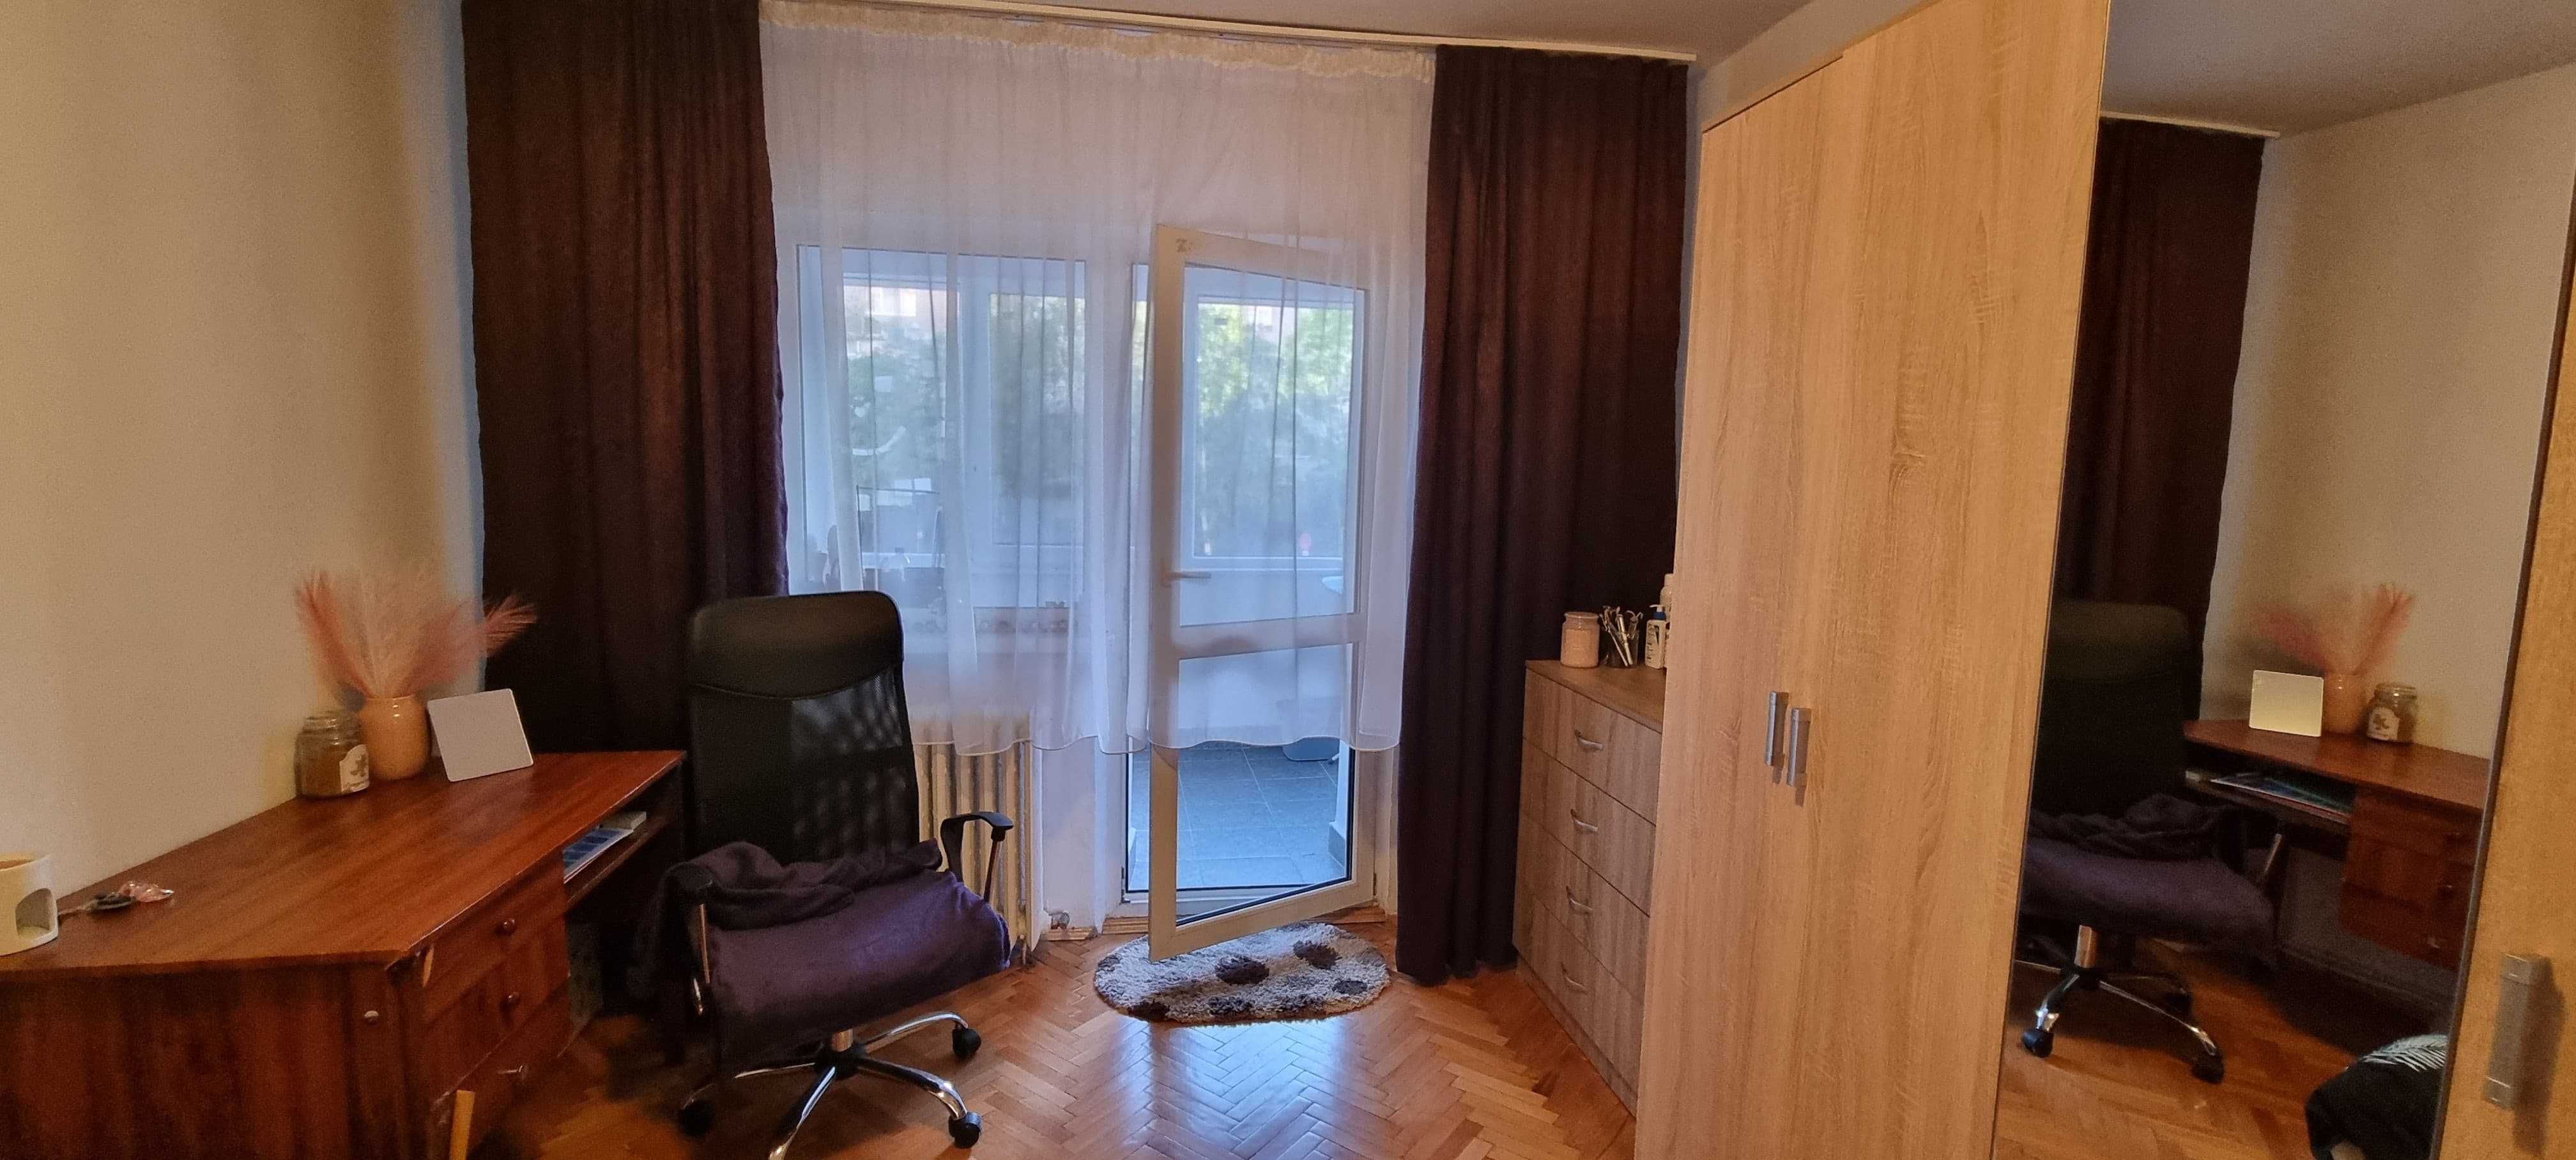 De inchiriat apartament cu 3 camere, 2 bai la etaj 1 in Piața Mărăști!